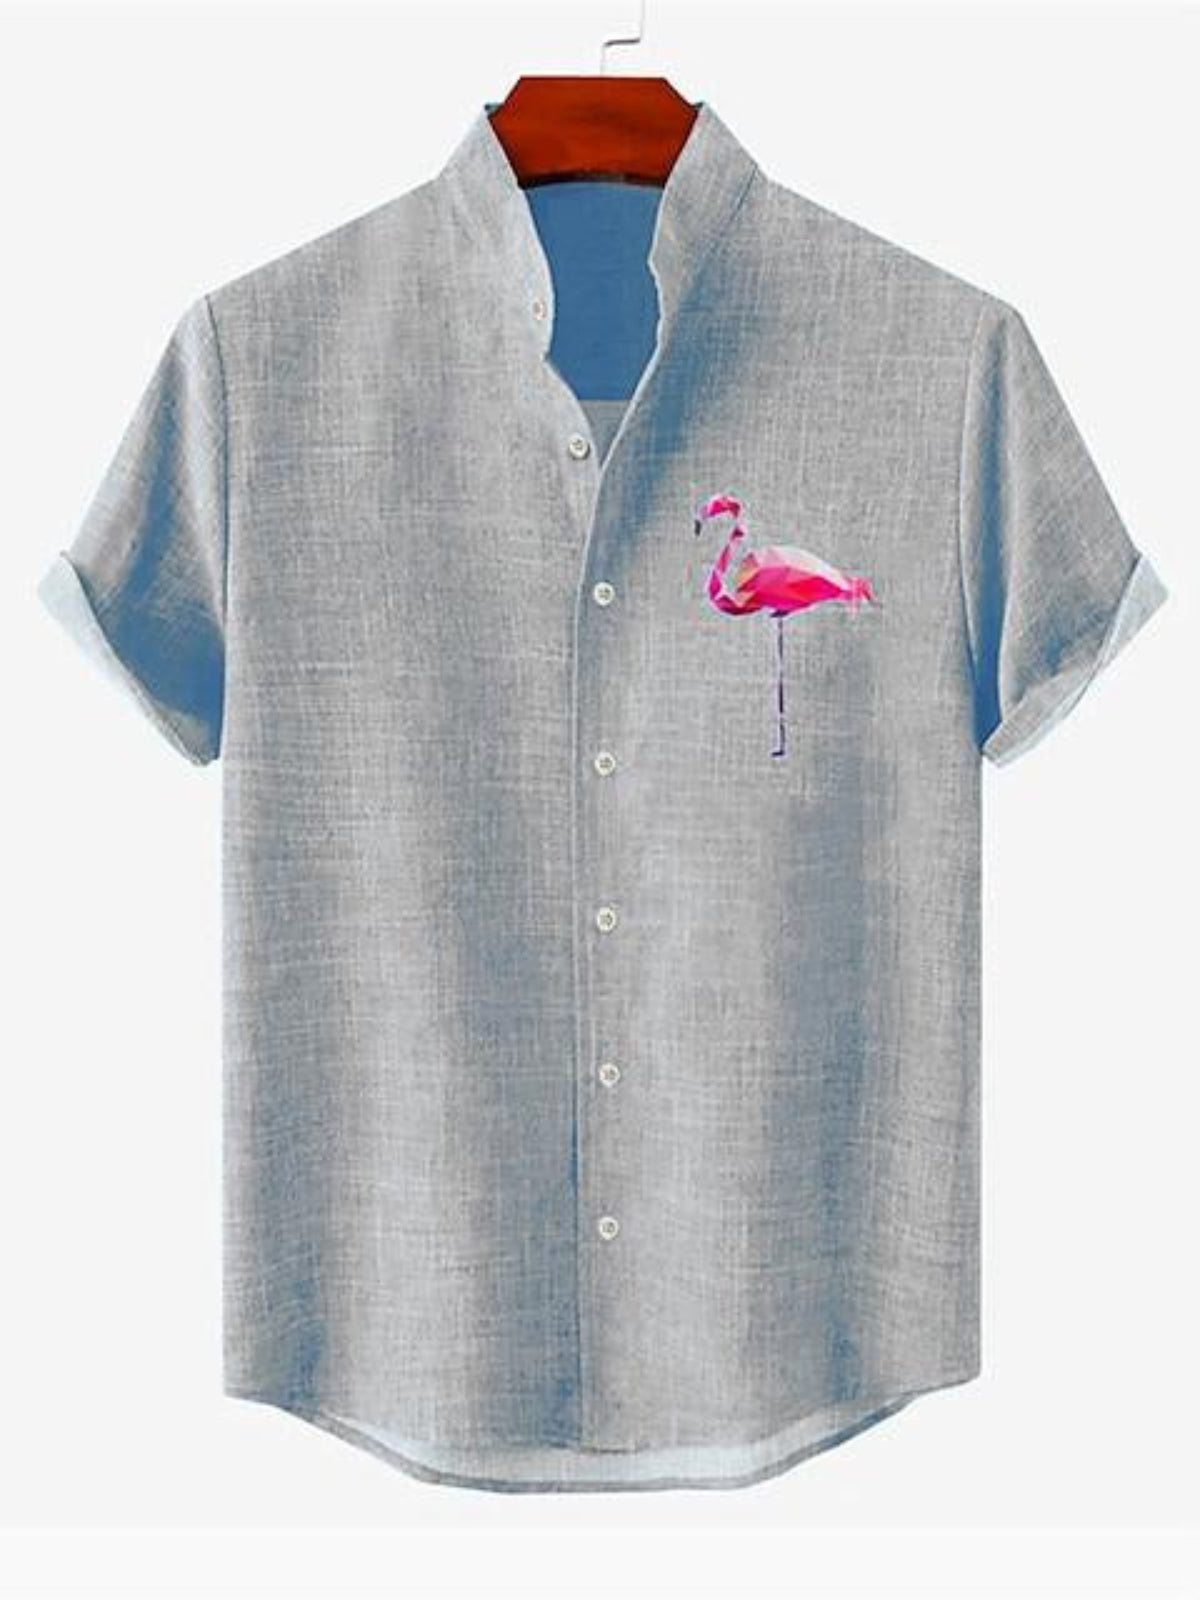 Flamingo Print Stand Collar Shirt